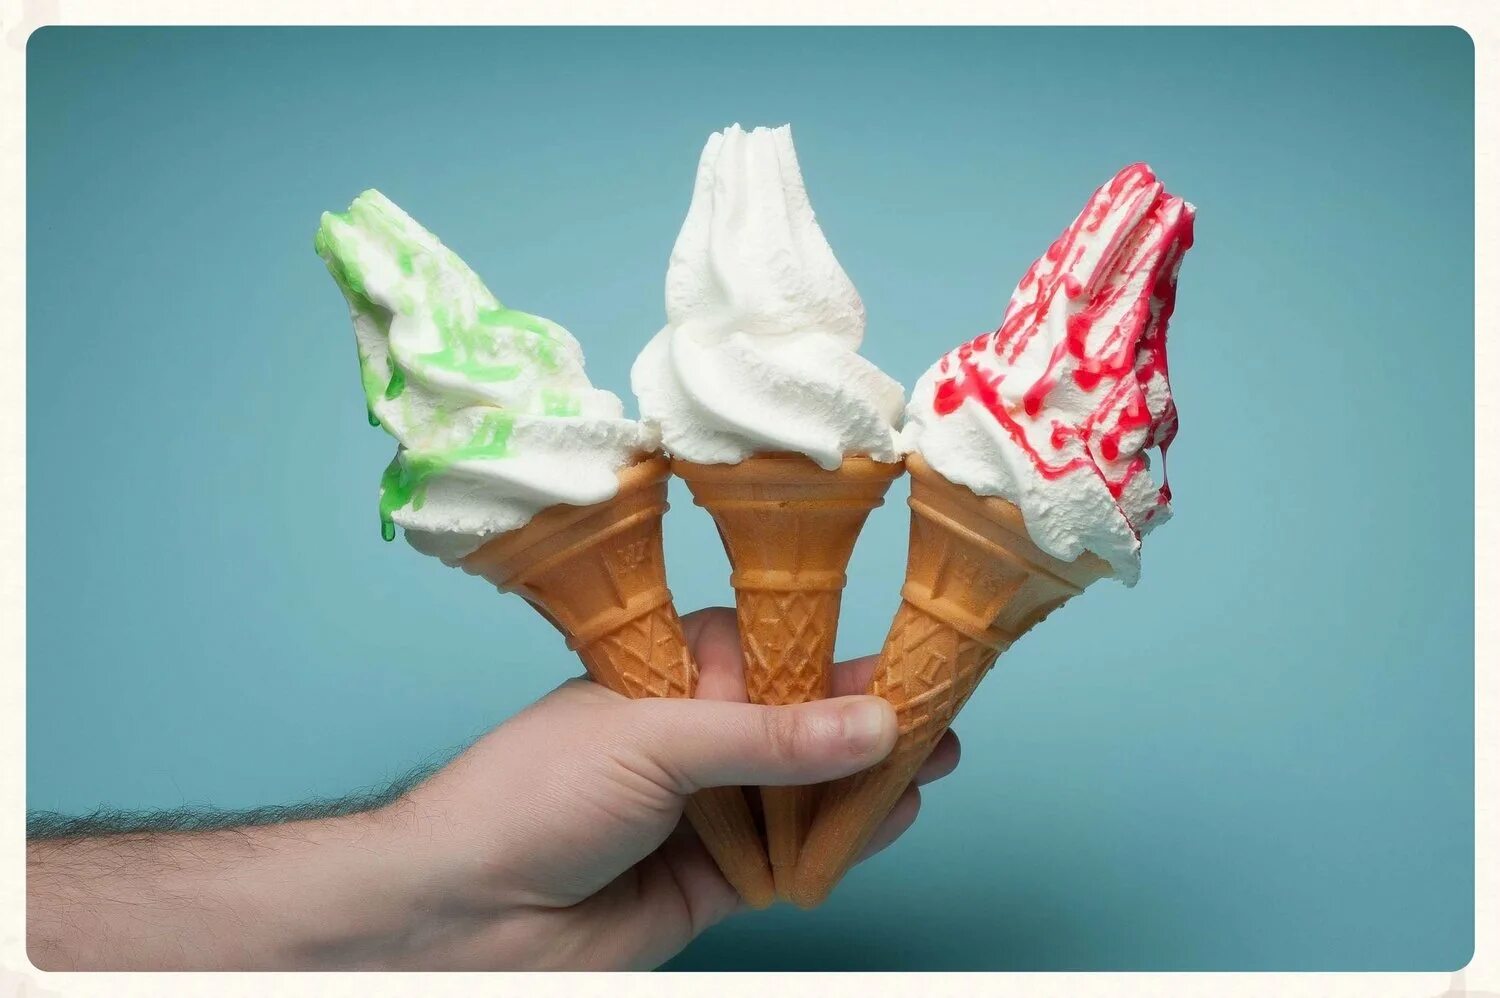 Реклама мороженого. Милка мороженое рожок. Мягкое мороженое. Мягкое мороженое в рожке.